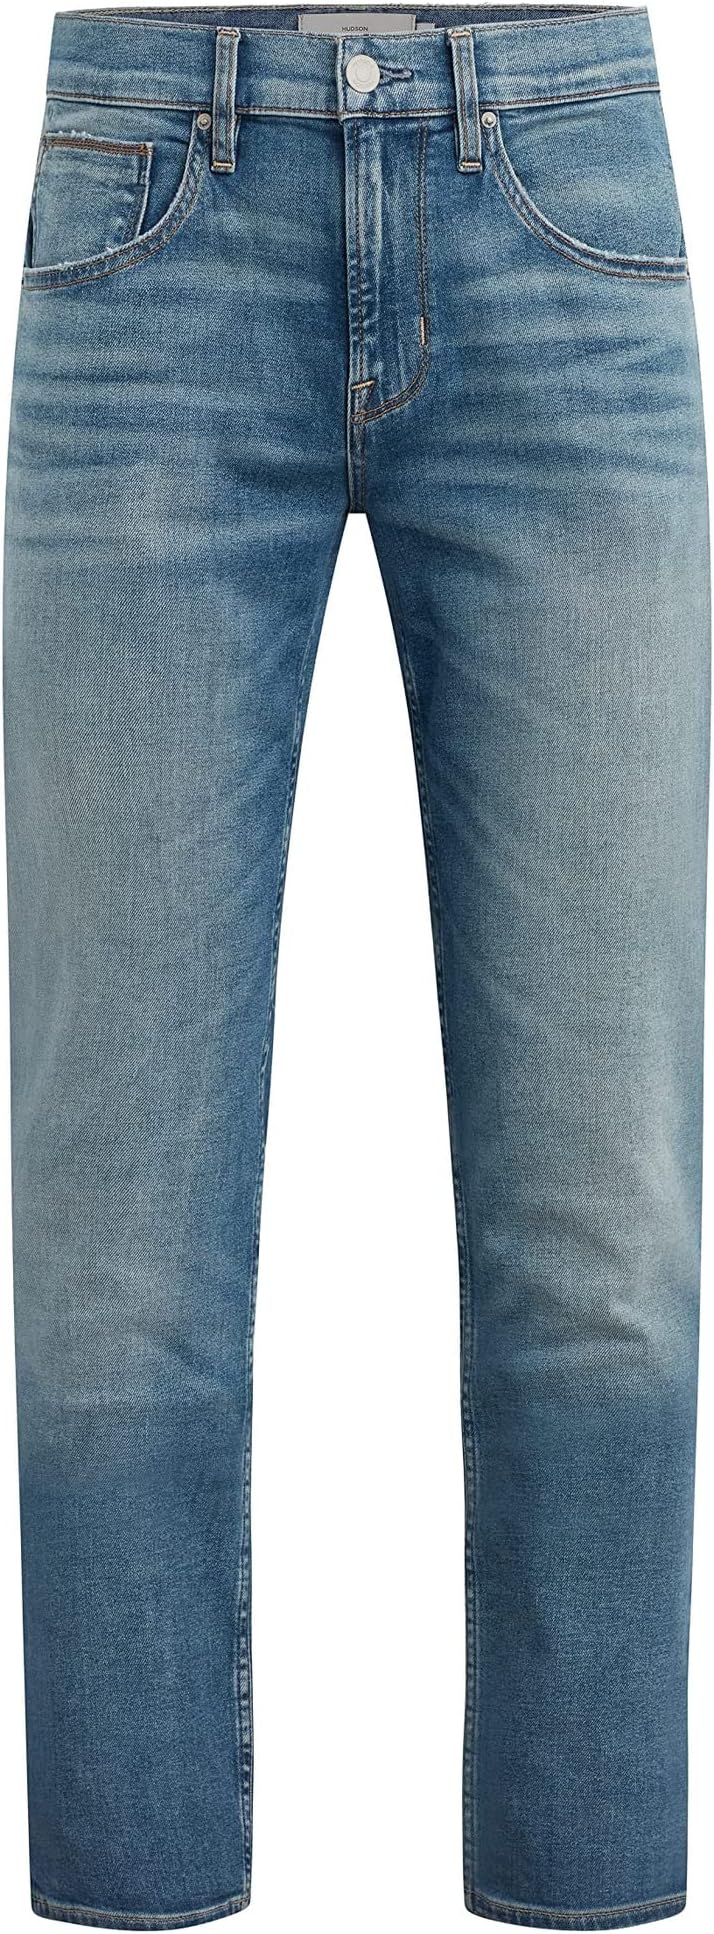 Джинсы Byron Straight in Bayview Hudson Jeans, цвет Bayview